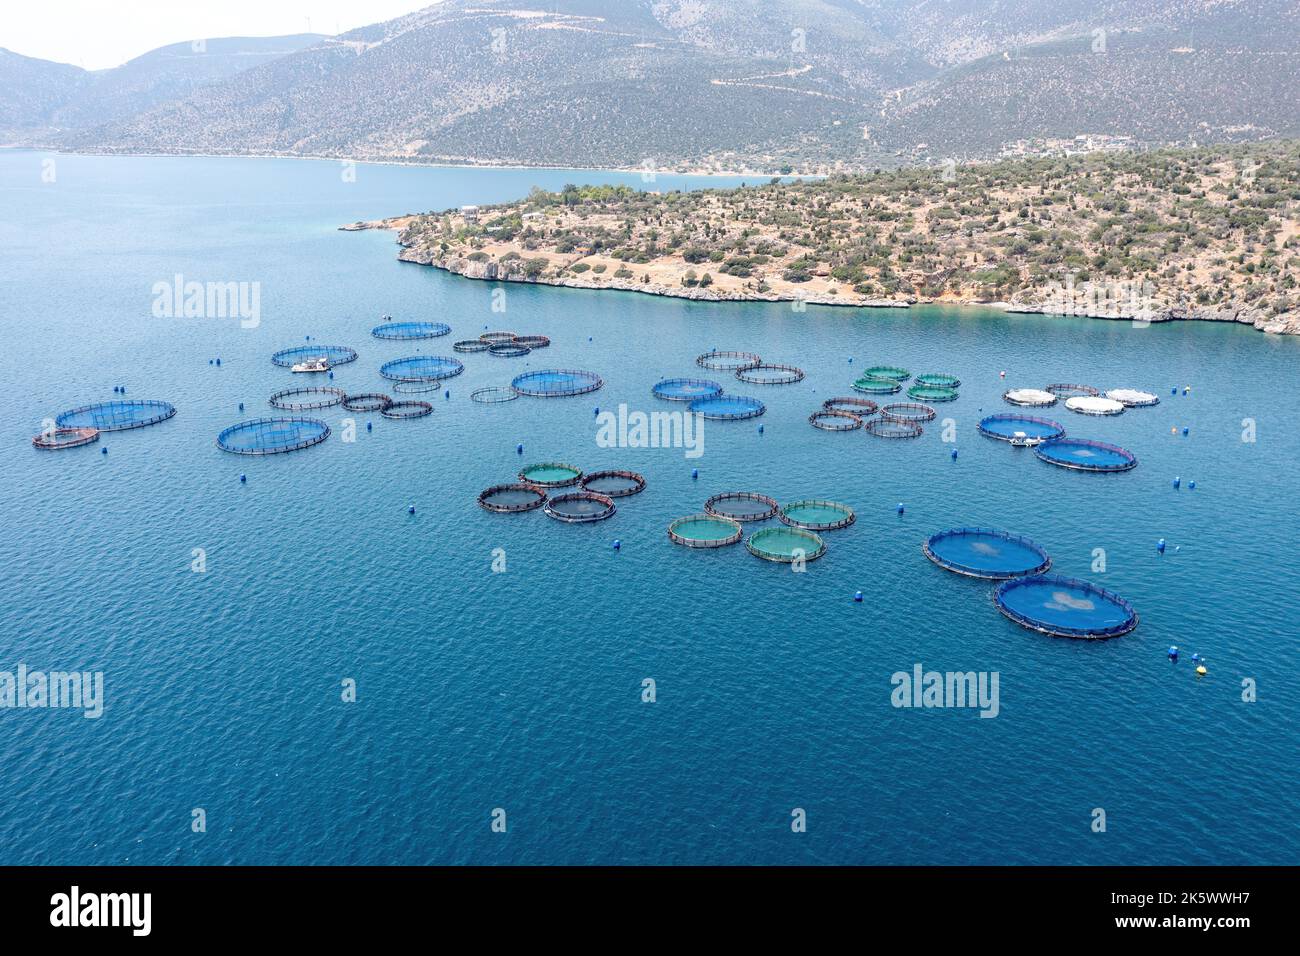 Pisciculture. Bar de mer et dorade de mer croissant dans des cages, vue aérienne de drone. Industrie du poisson aquacole près de Galaxidi, Grèce Banque D'Images